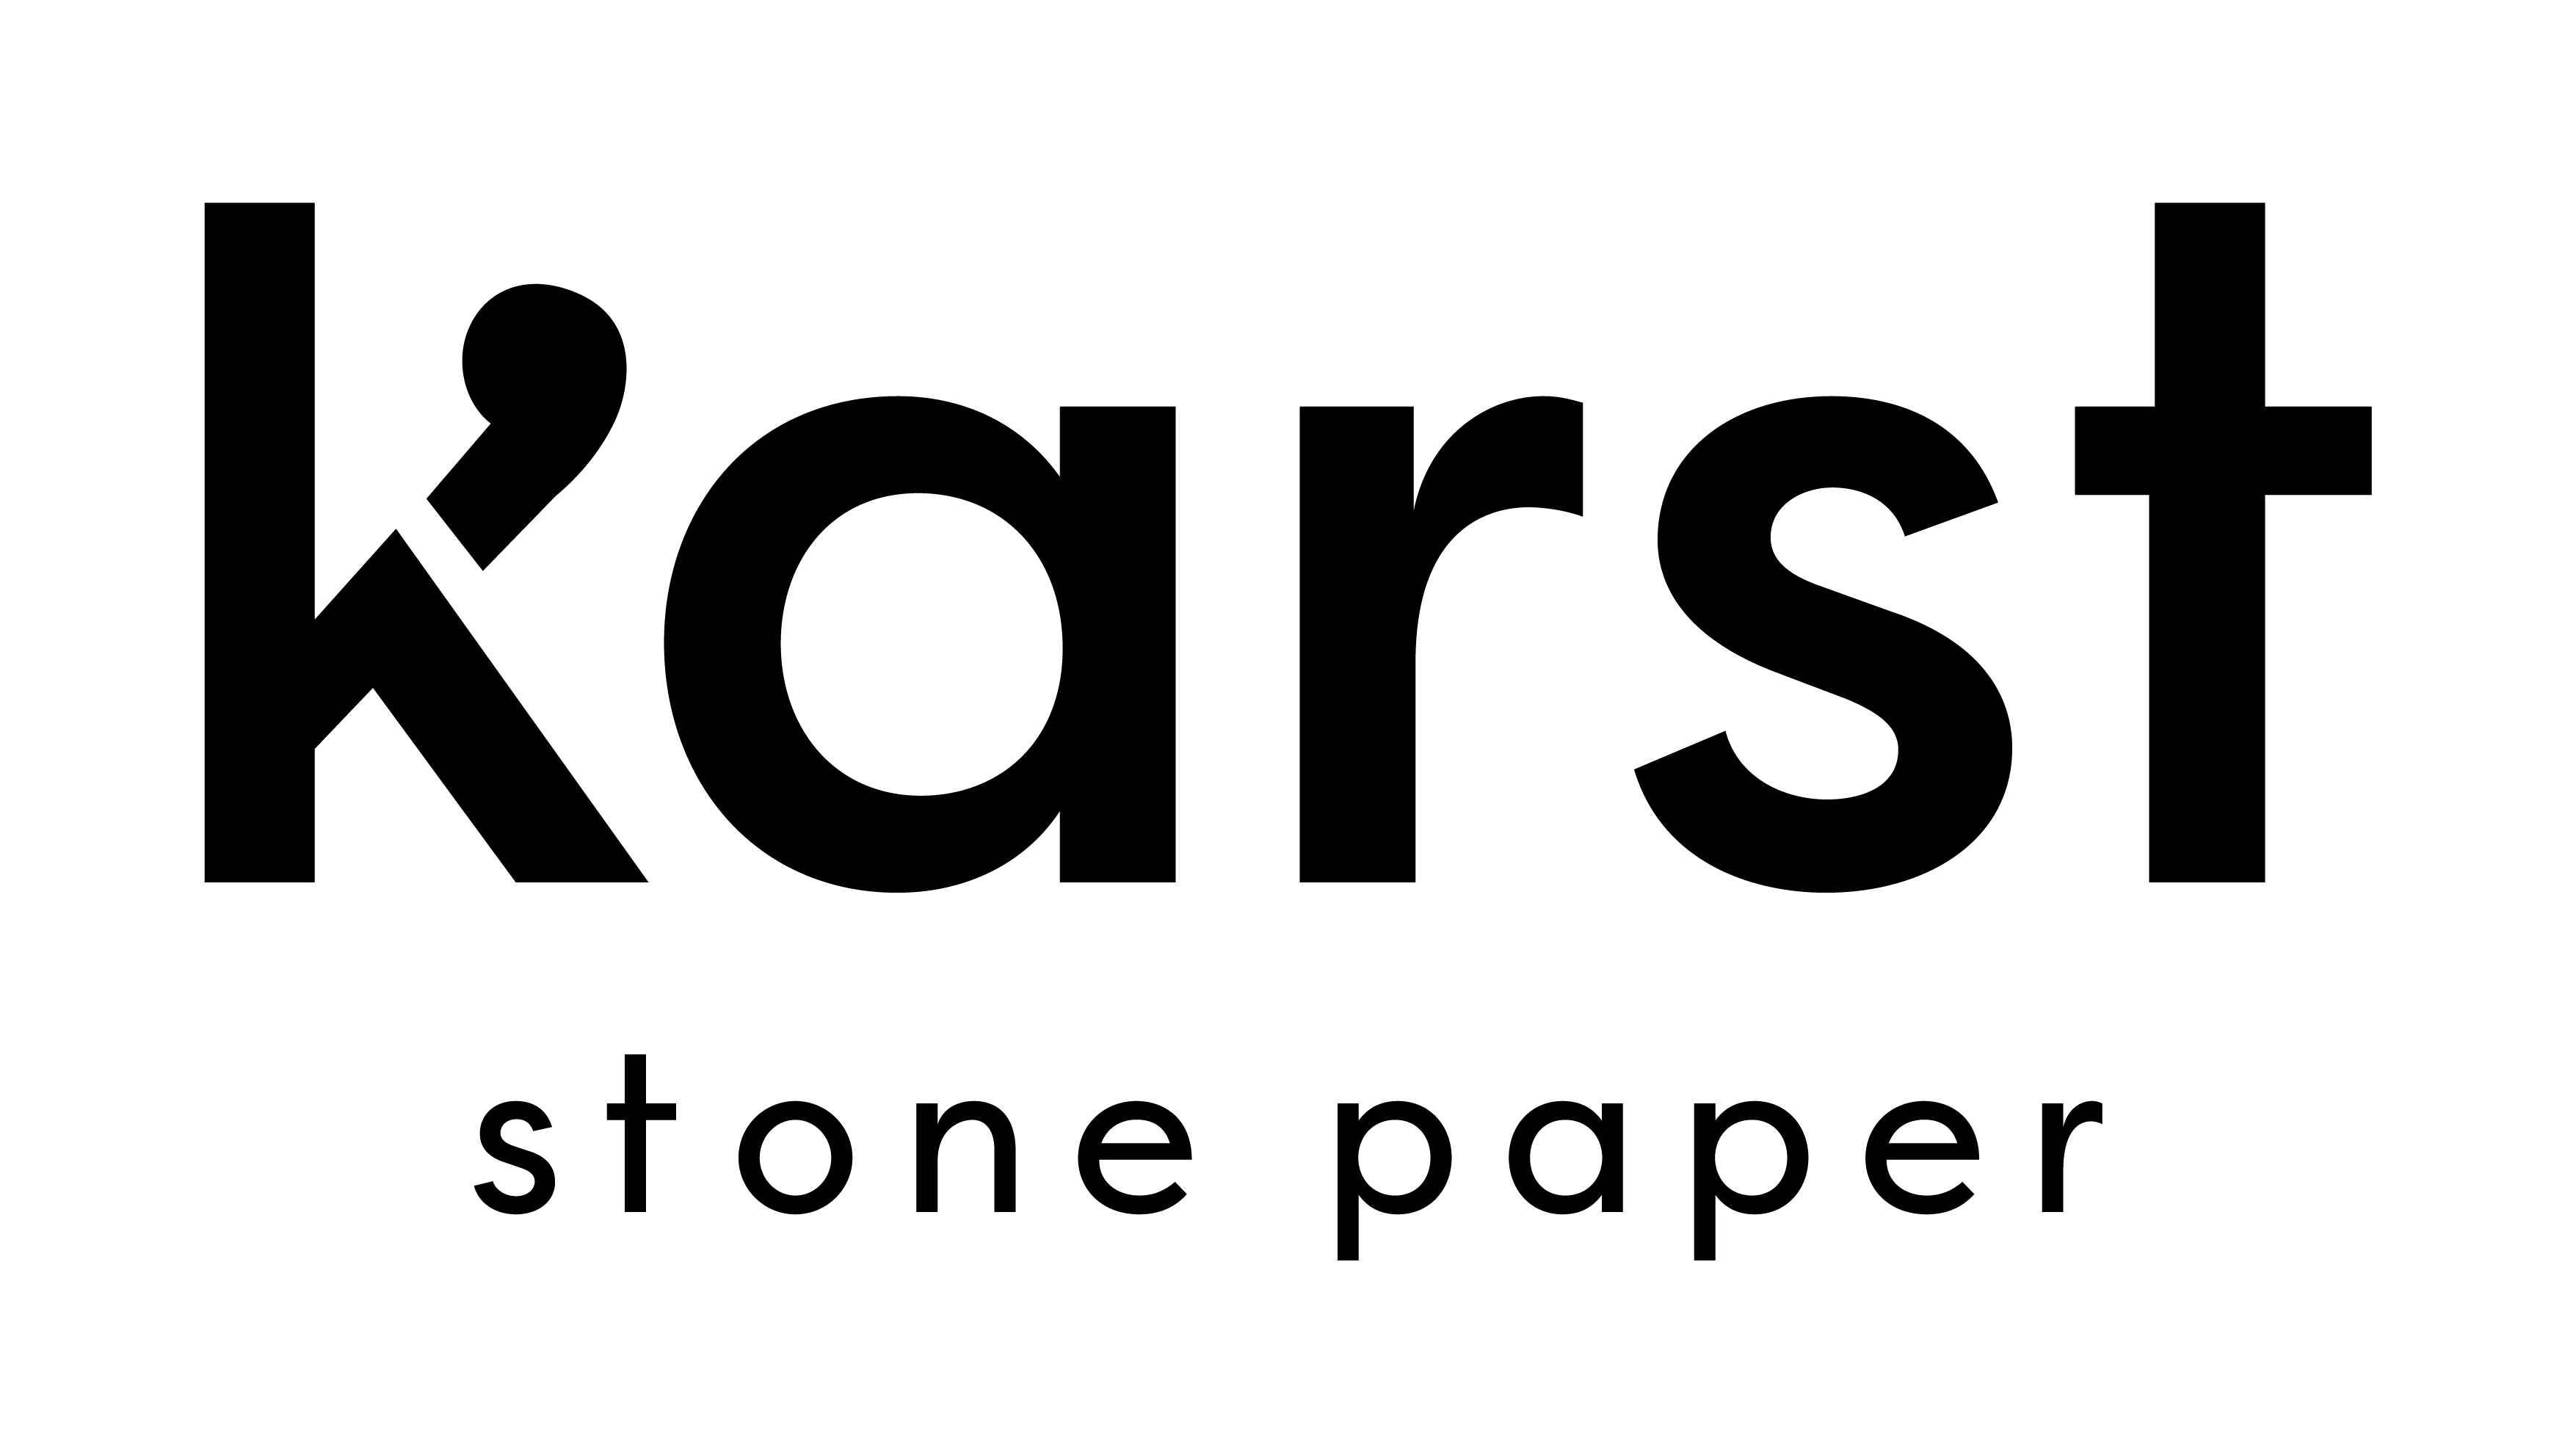 Karst logo